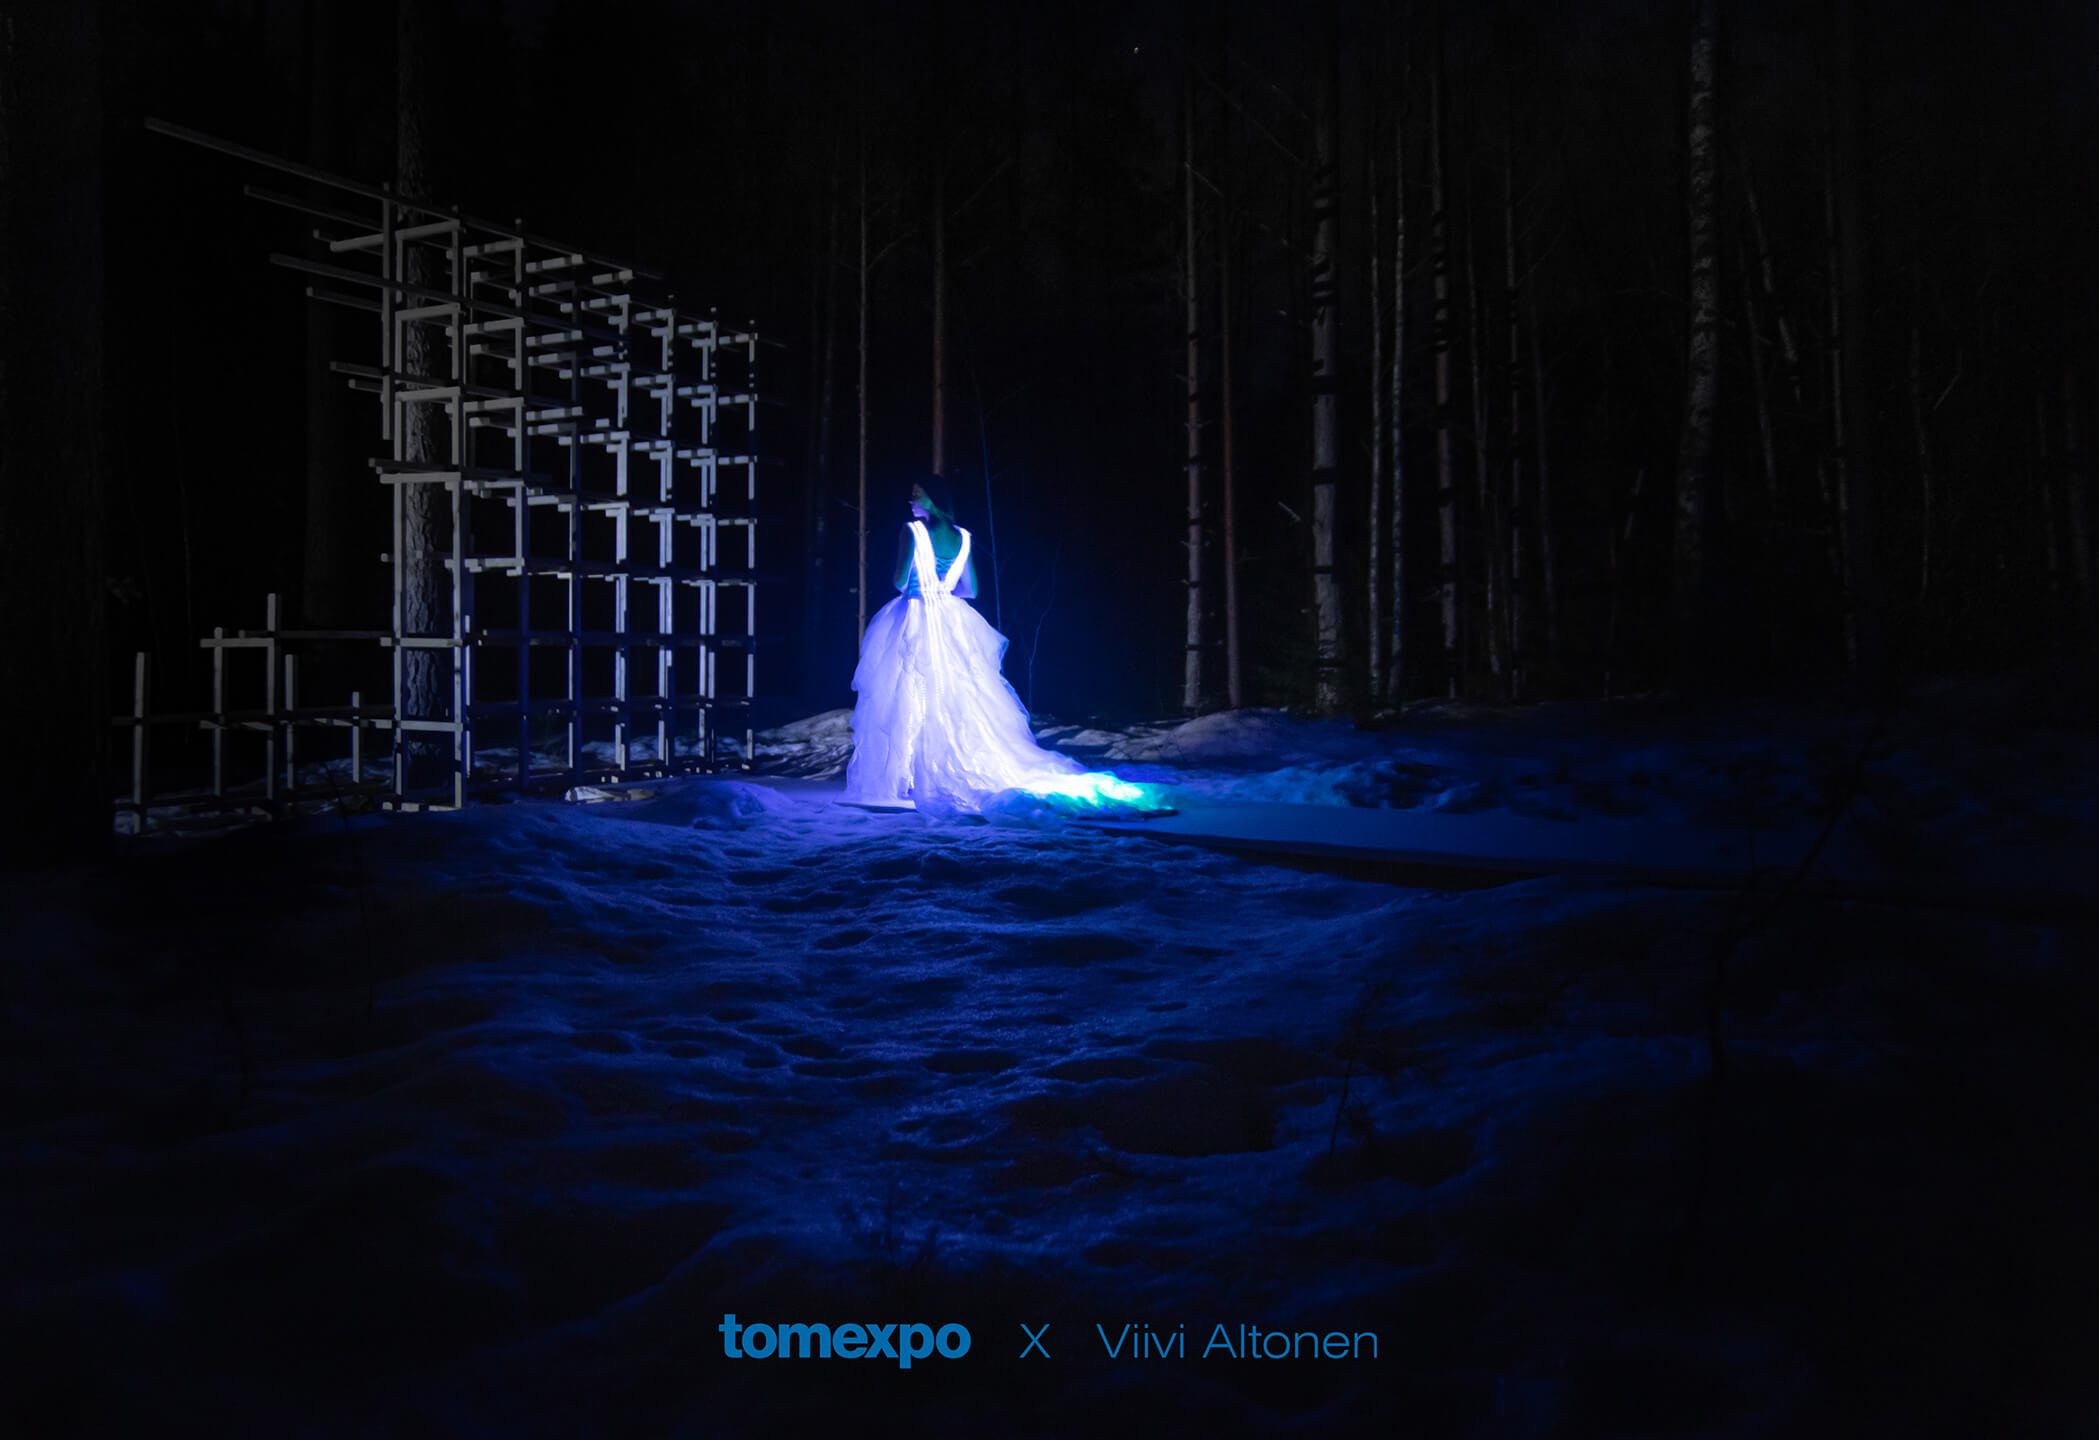 Viivi Aaltonen on Tomexpo designed winter stage